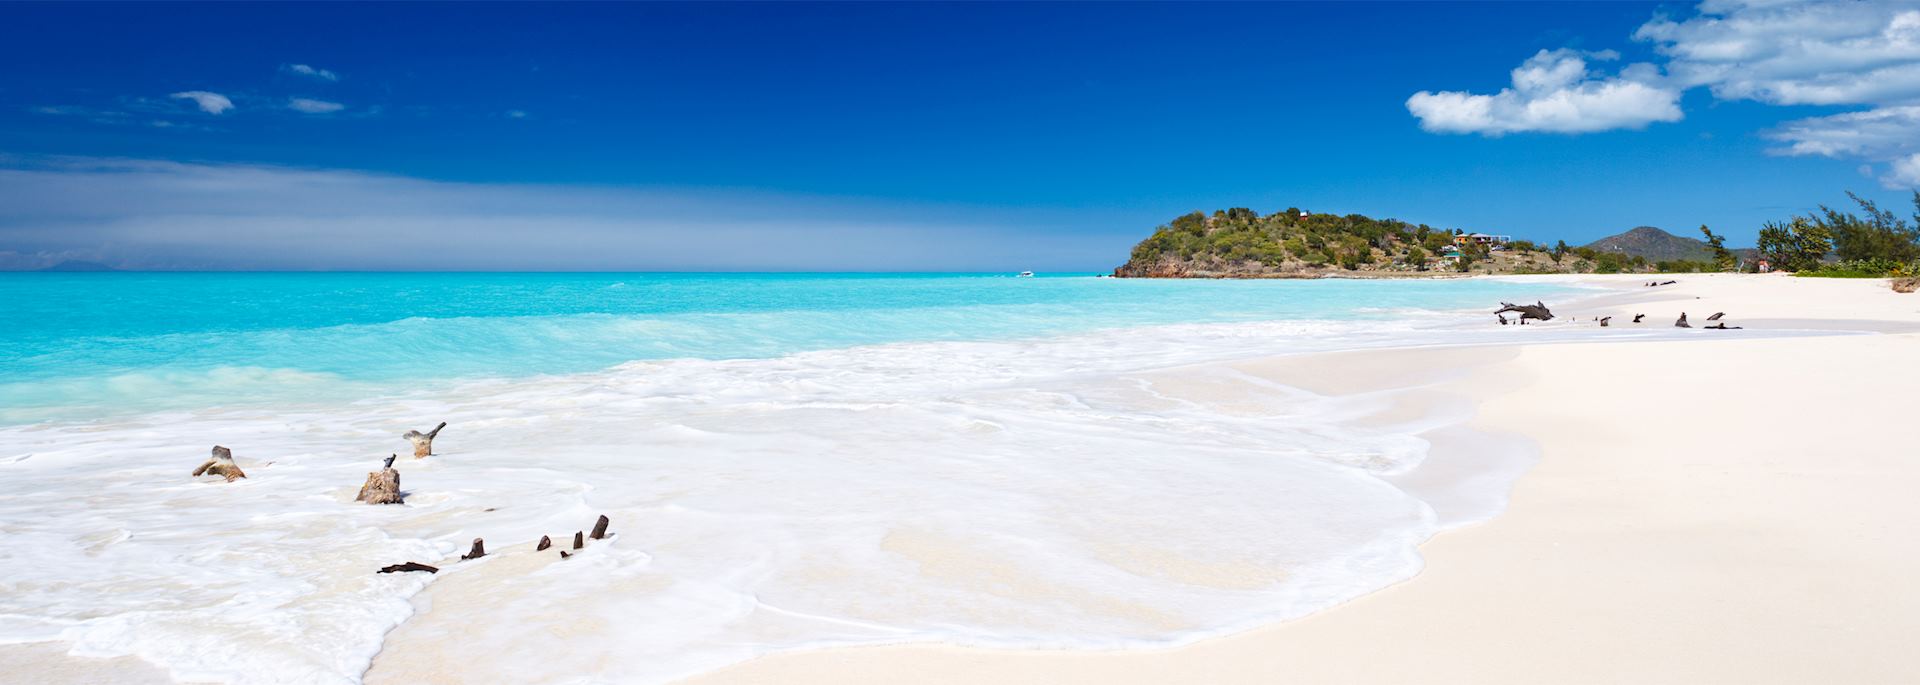 Deserted beach on Antigua